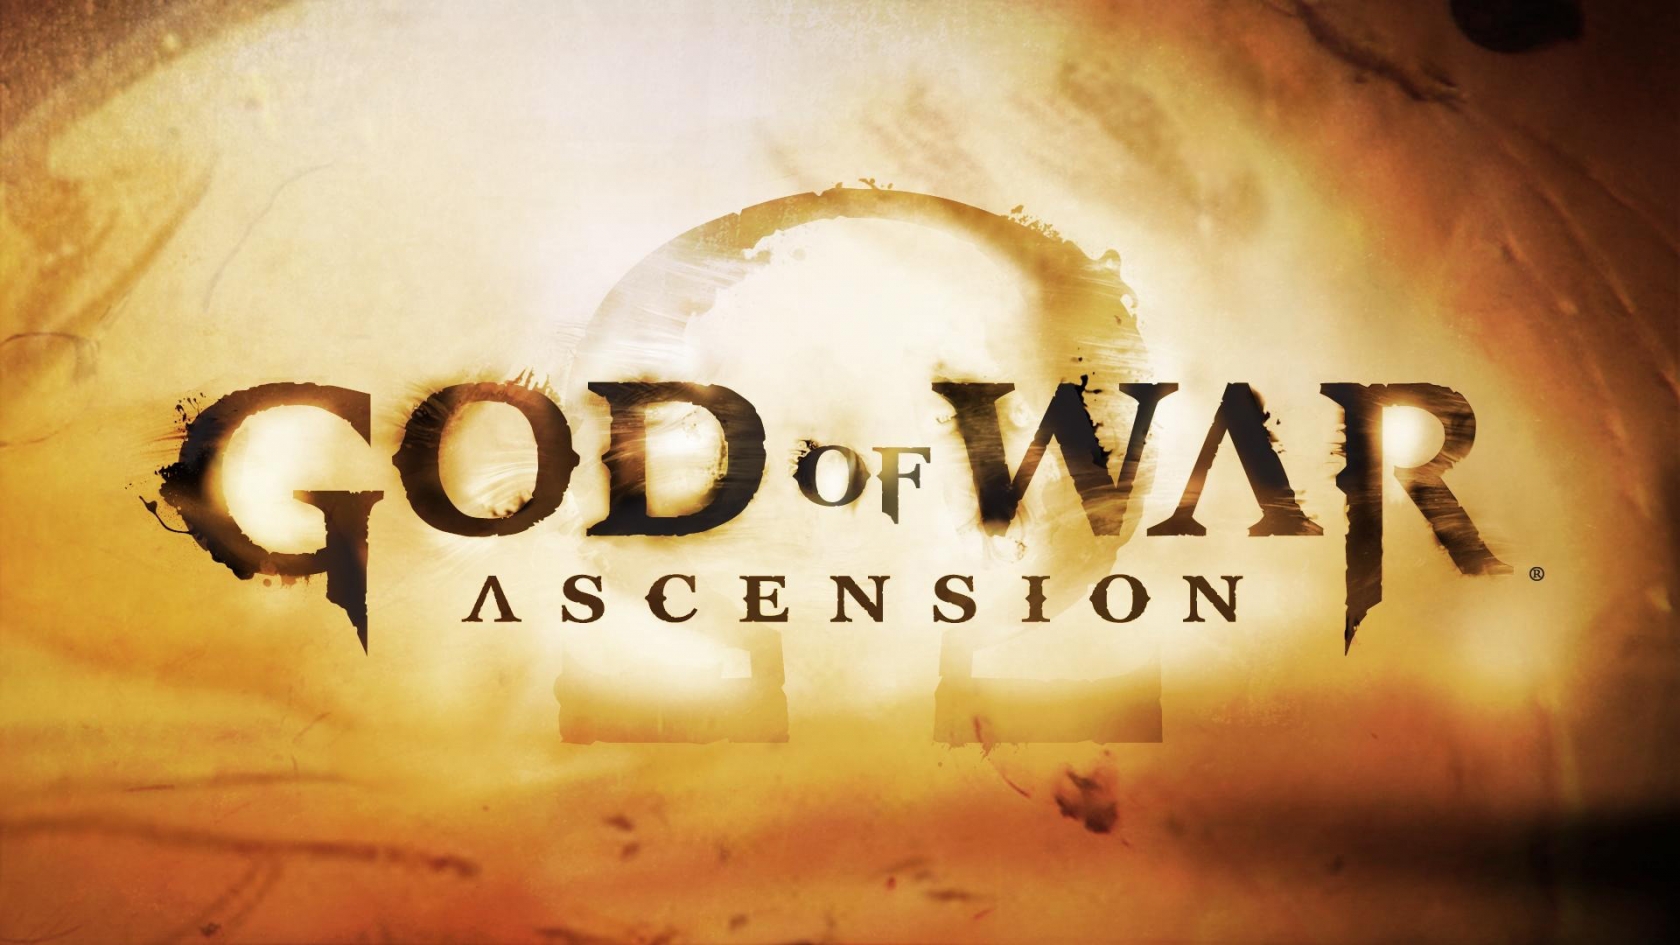 God of War Ascension for 1680 x 945 HDTV resolution